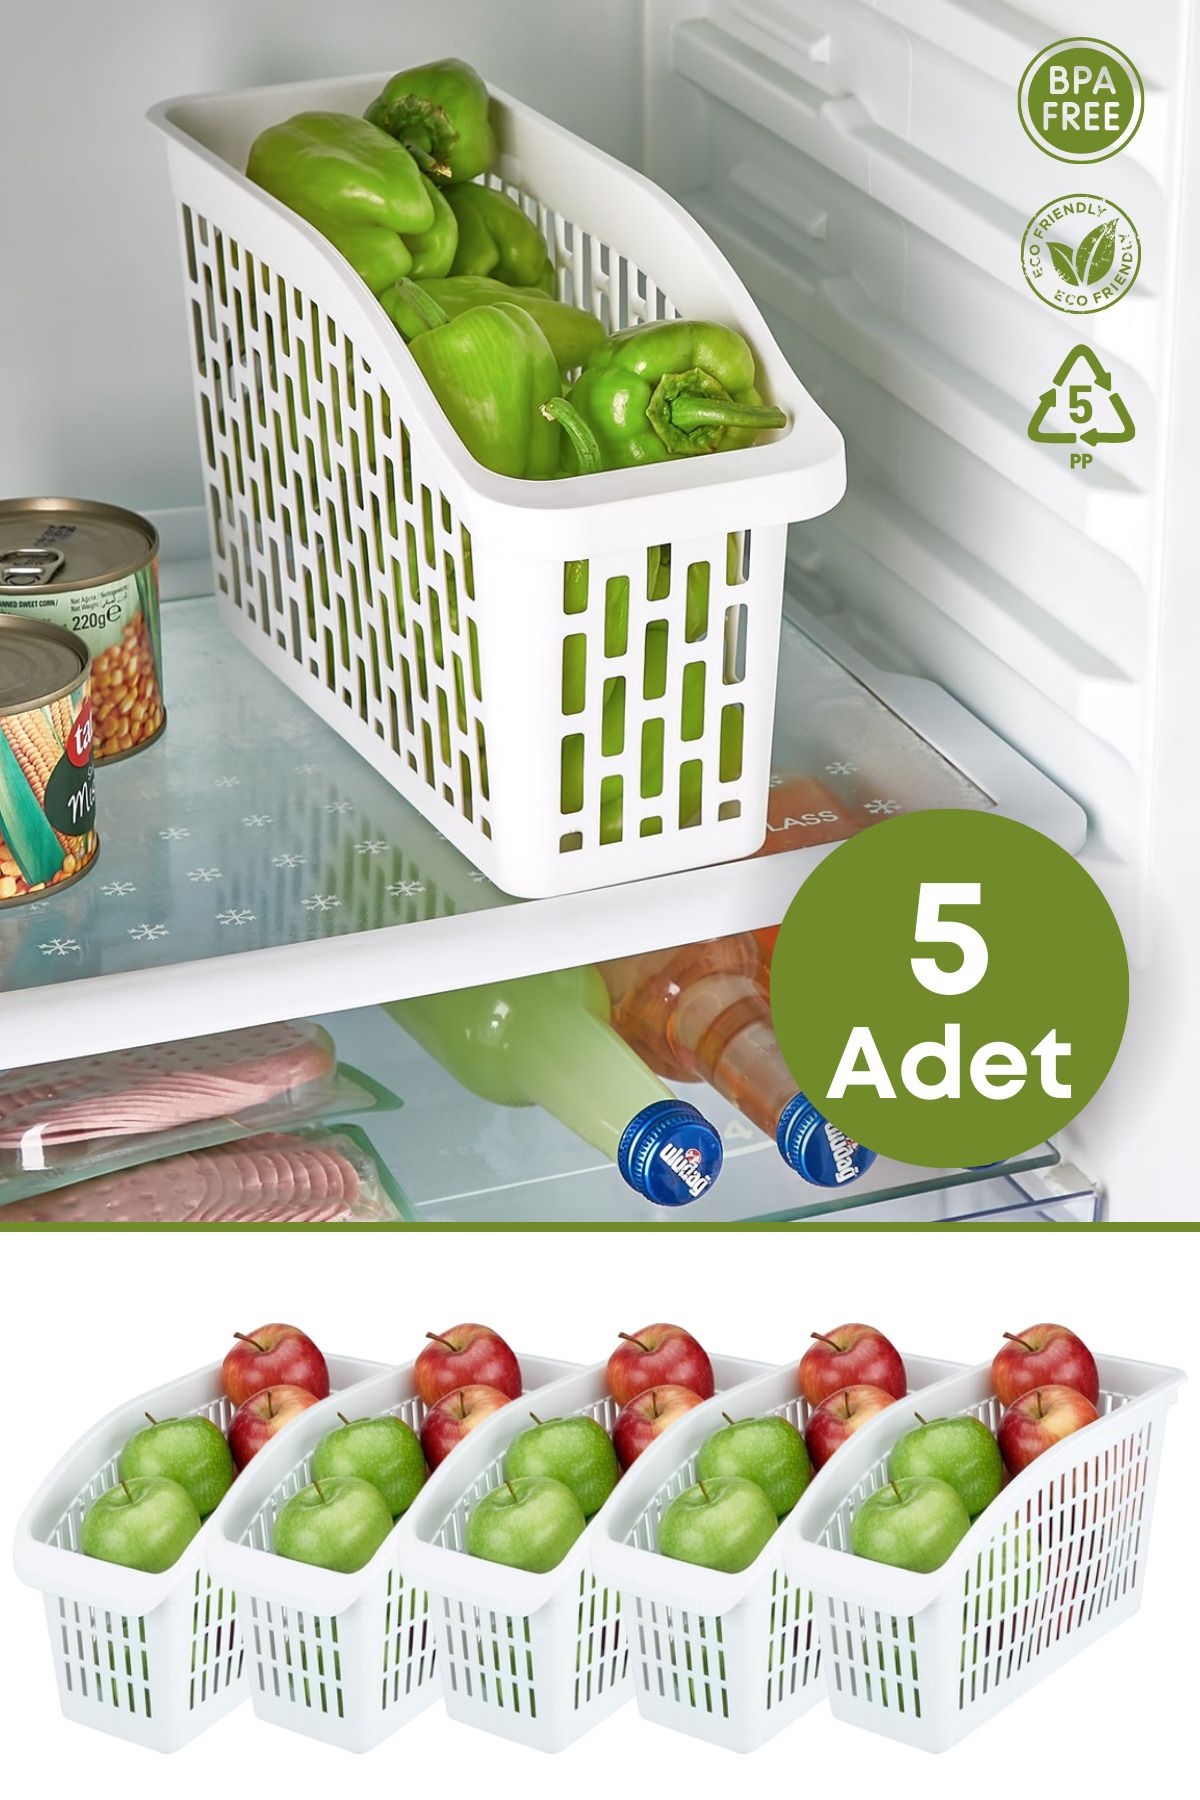 GRİMOR Life 5 Adet Buzdolabı Içi Düzenleyici Sebze Meyve Sepeti Mutfak Banyo Tezgah Altı Üstü Organizer